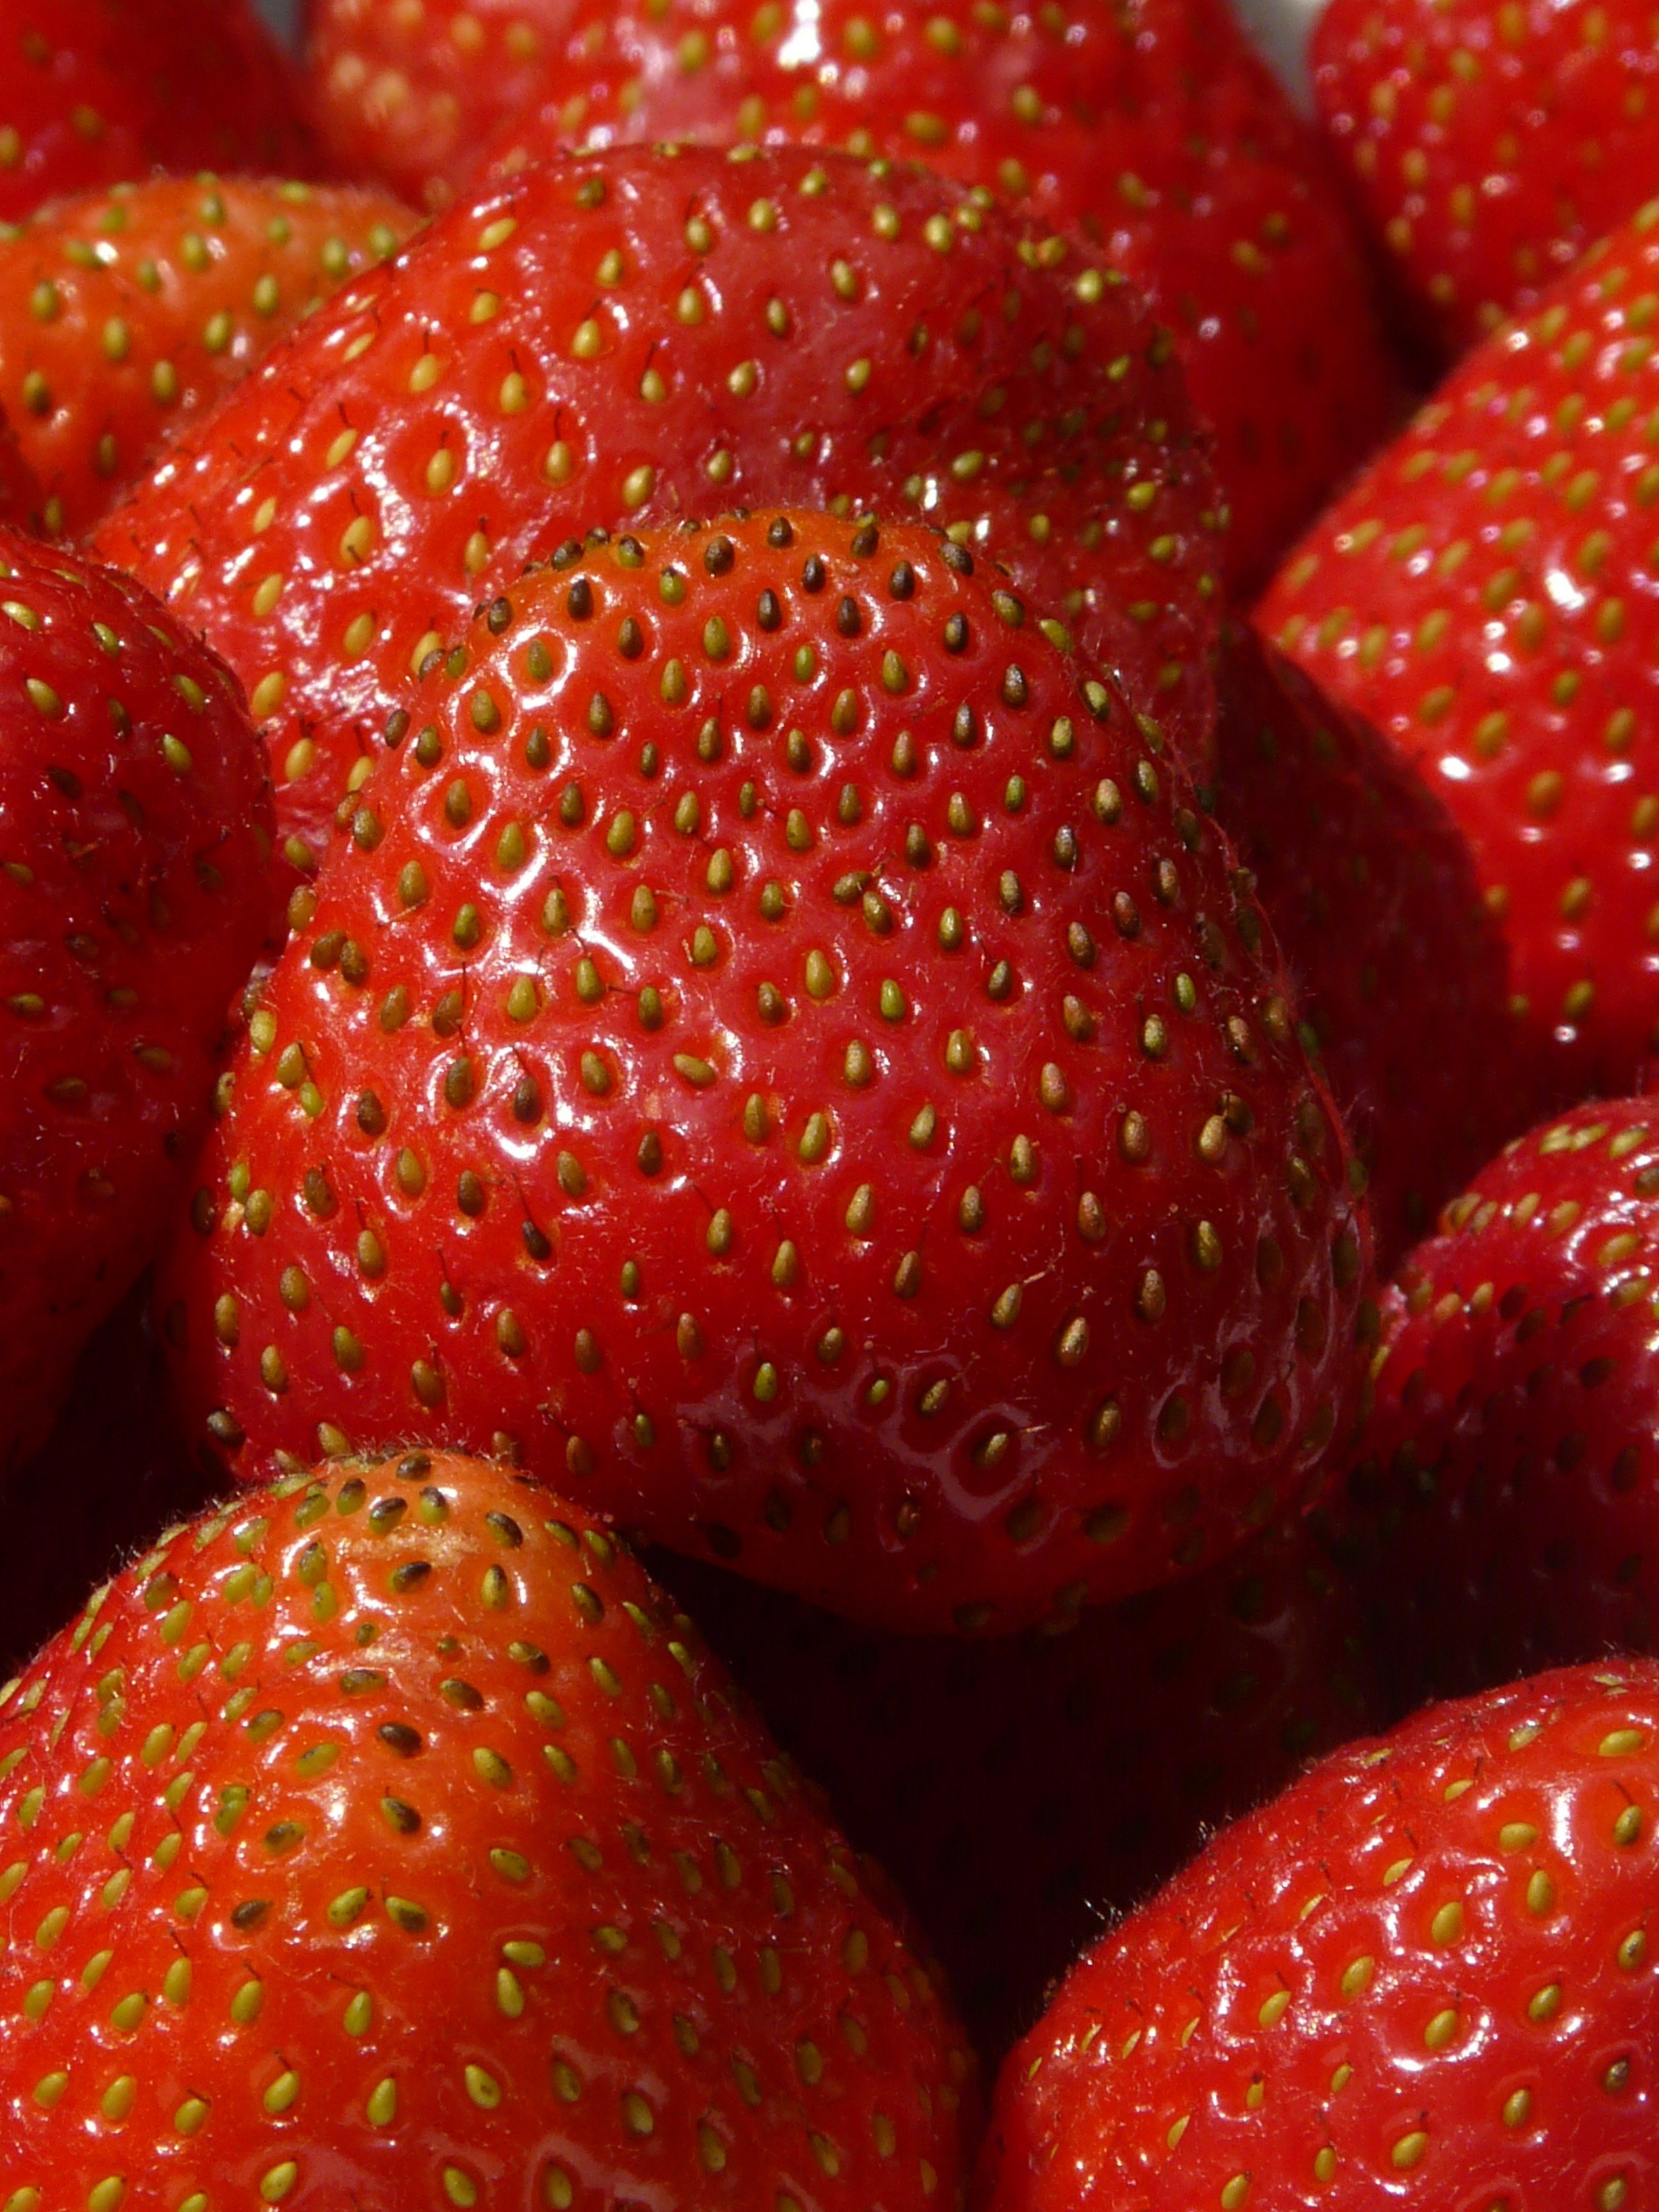 Collection strawberry. Клубника черри Берри. Черная клубника черри Берри. Черри блоссом клубника. Красные фрукты.